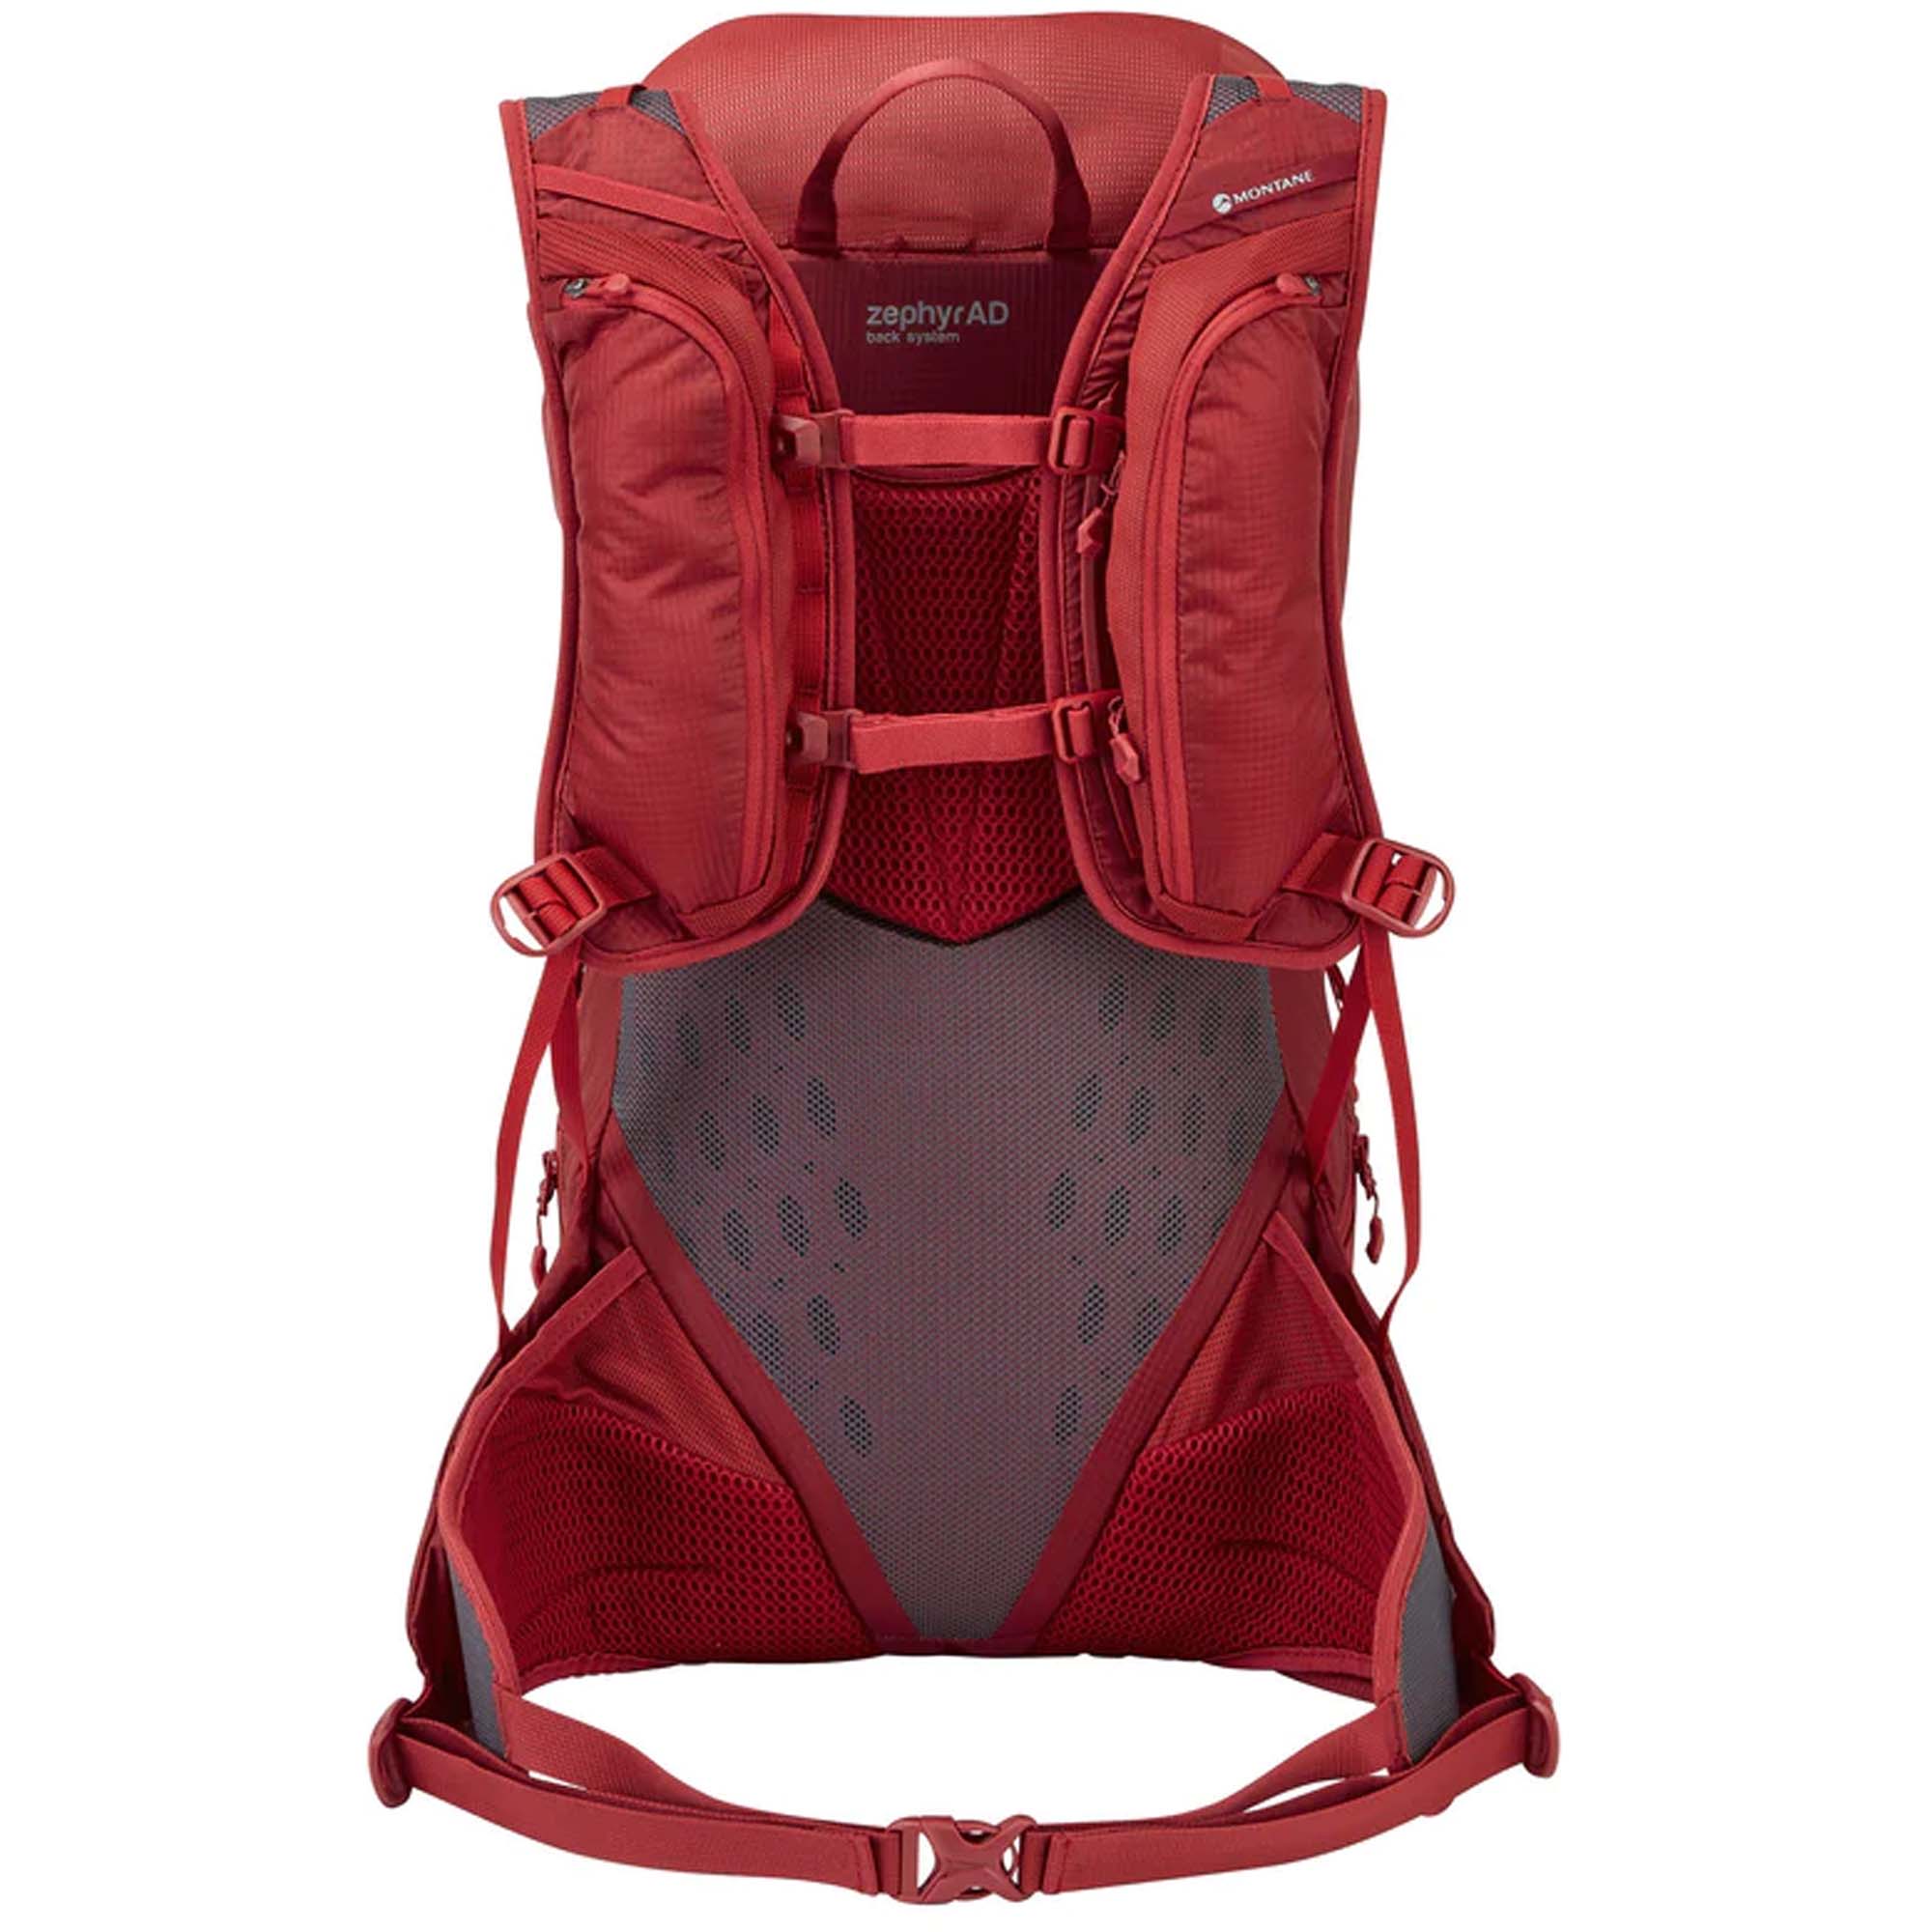 Montane Trailblazer 30 Trekking Backpack